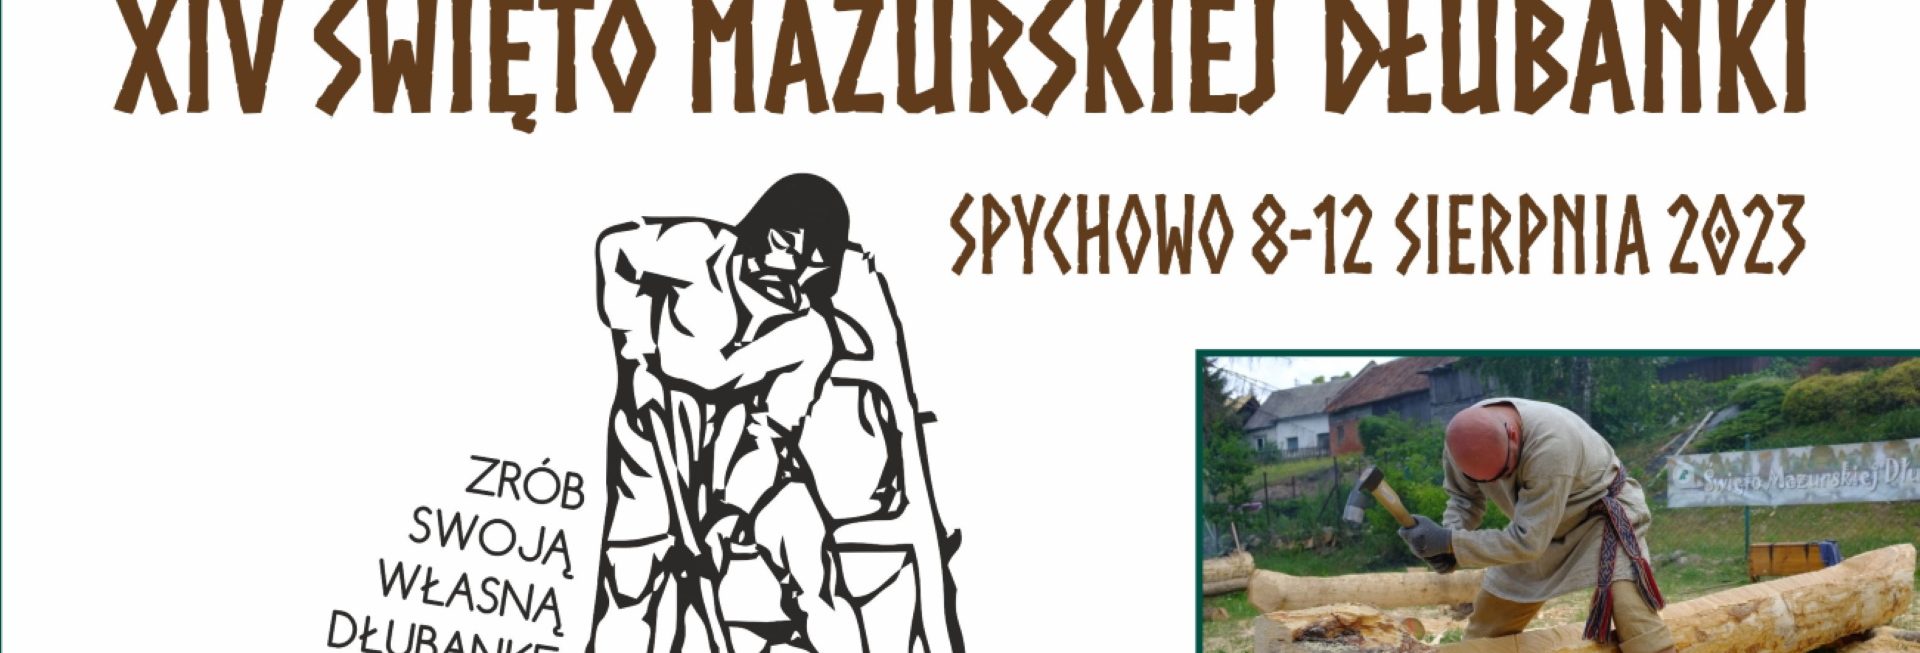 Plakat zapraszający w dniach 8-12 sierpnia 2023 r. do Spychowa na 14. edycję Święta Mazurskiej Dłubanki SPYCHOWO 2023.